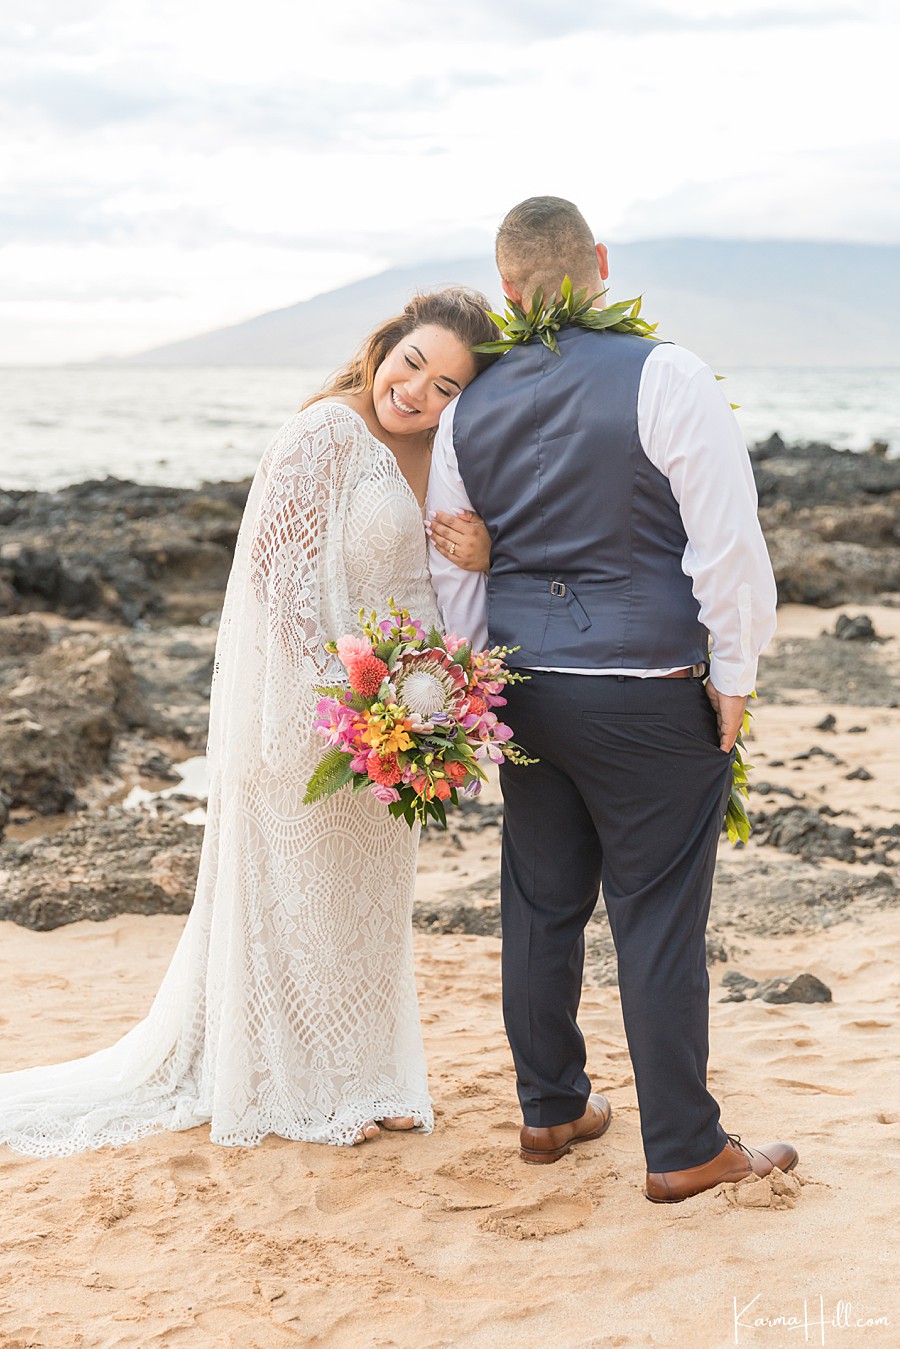 Wedding venues in Maui Hawaii
